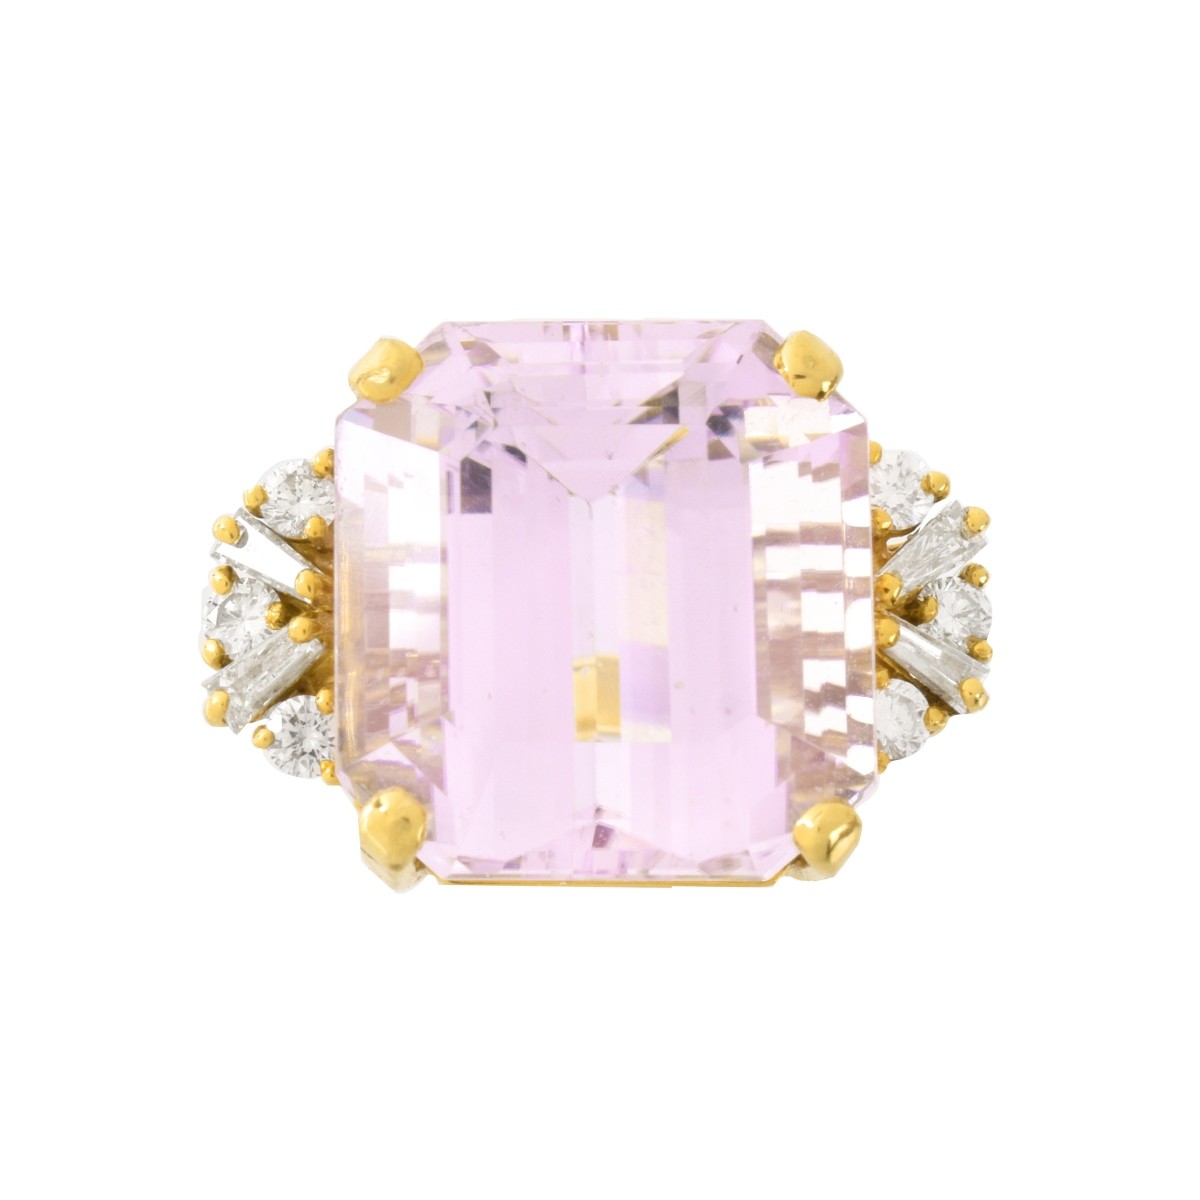 Kunzite, Diamond and18K Ring - Image 2 of 7